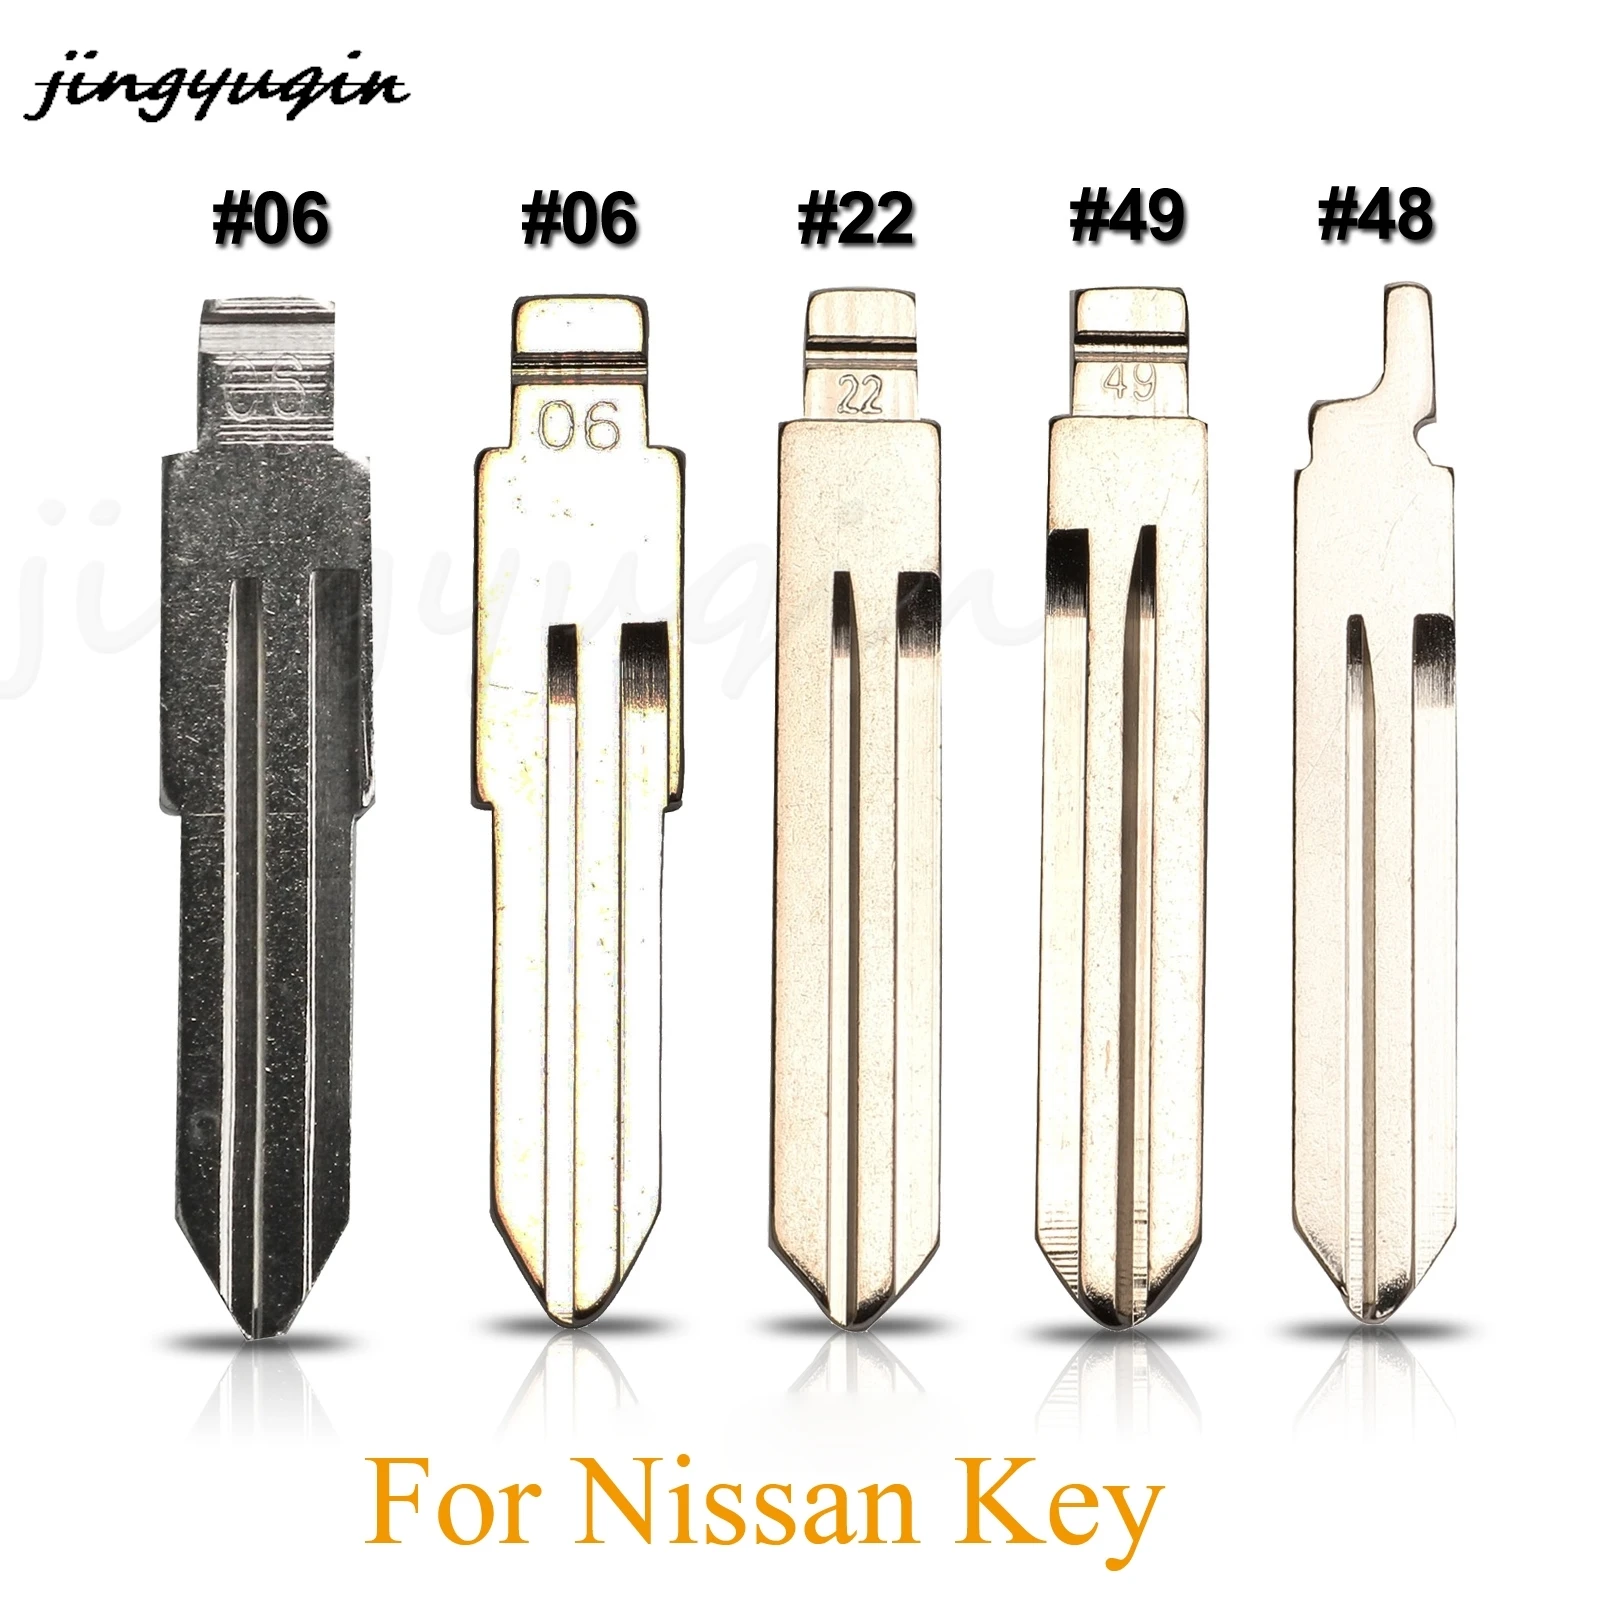 

jingyuqin Remote Key Blade #06 #22 #49 #48 For Nissan Qashqai J10 J11 X-Trail t31 t32 kicks Tiida Pathfinder Murano Note Juke